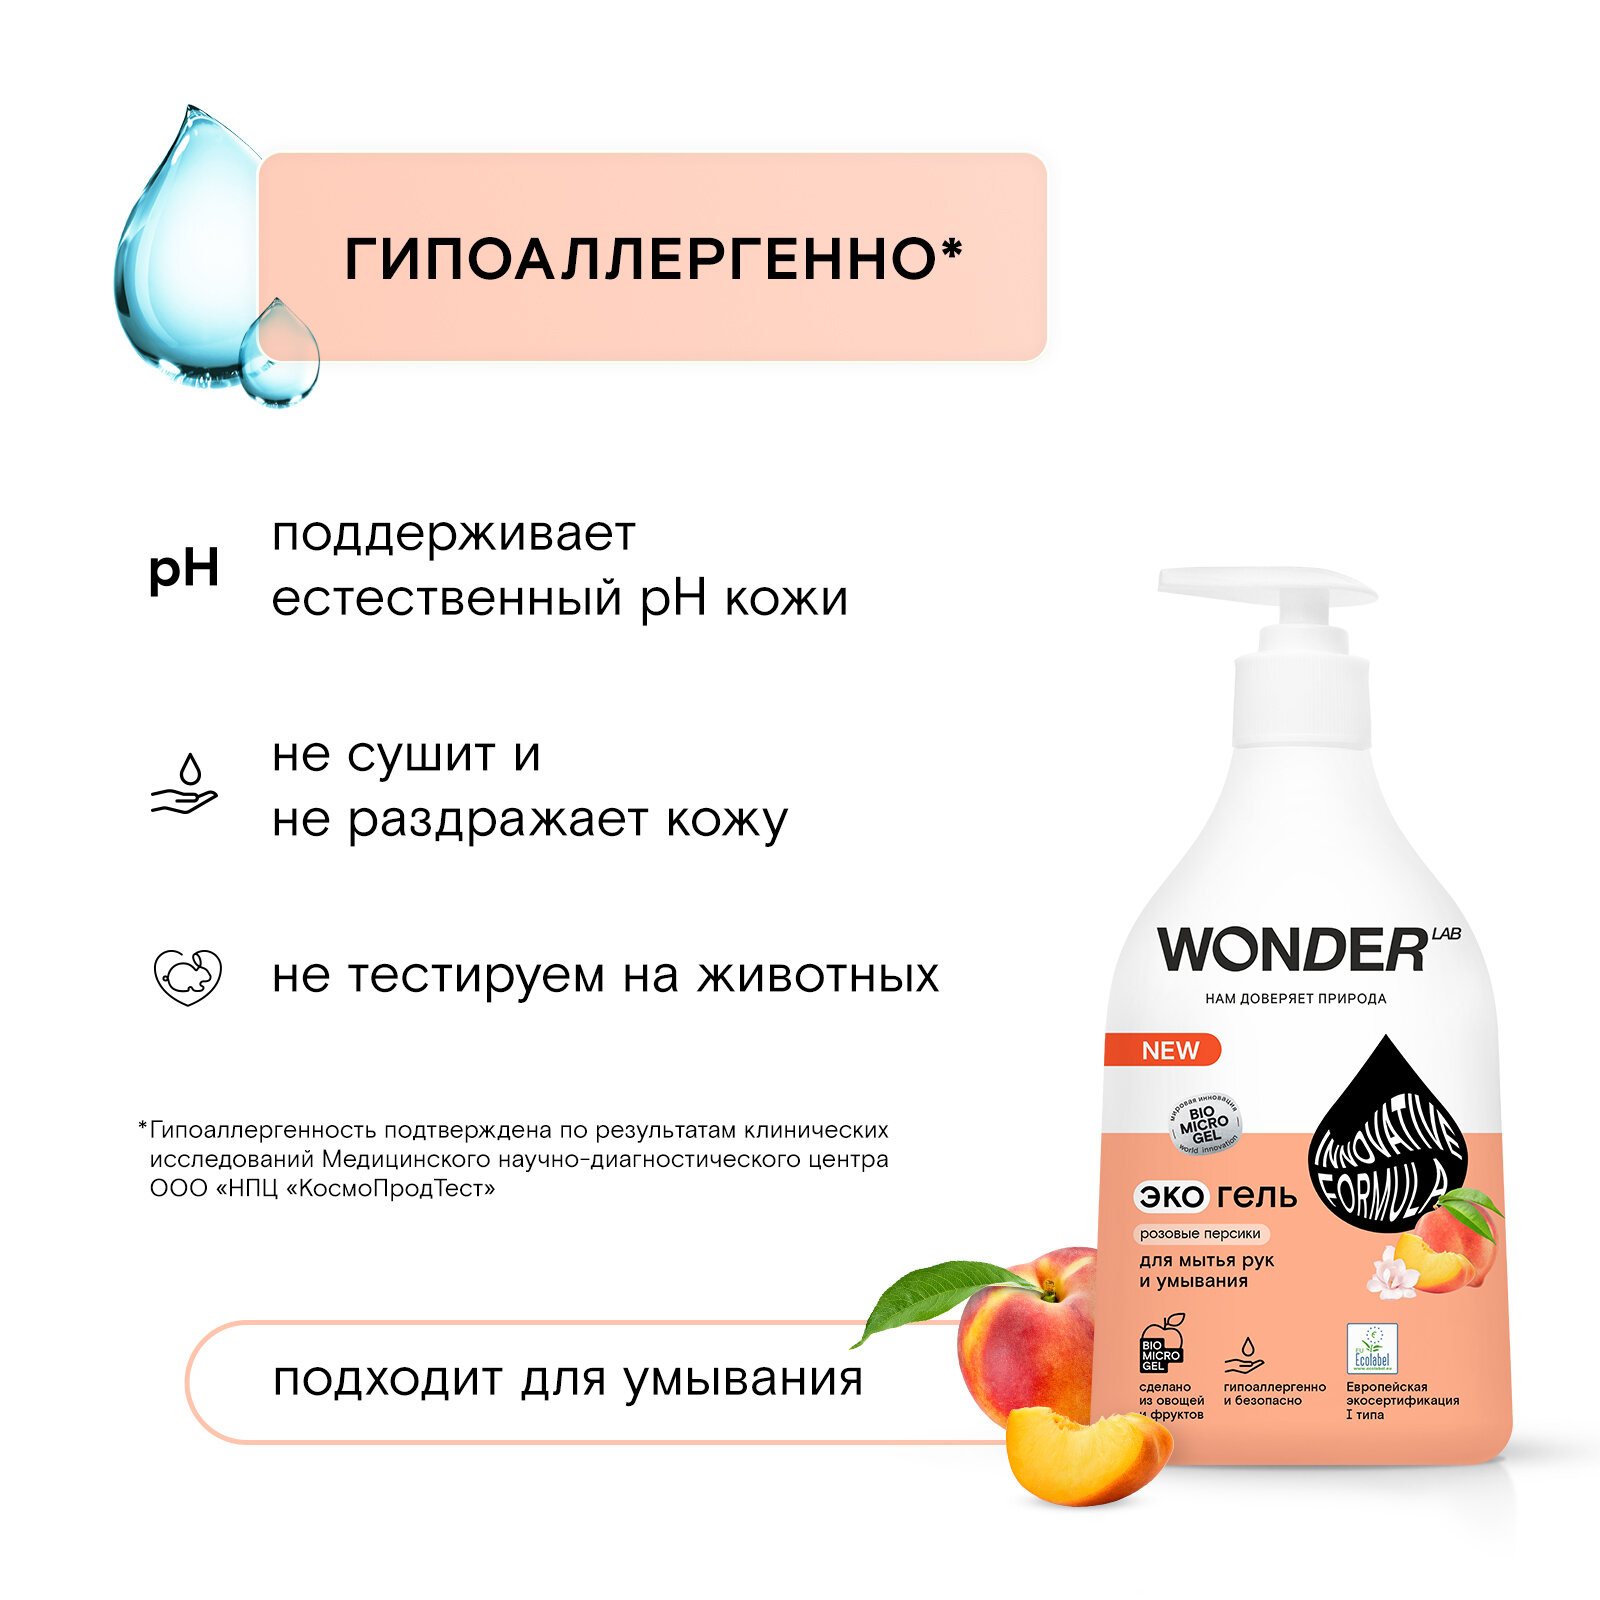 Экогель для мытья рук и умывания,розовые персики 0,54л Wonder lab - фото №3